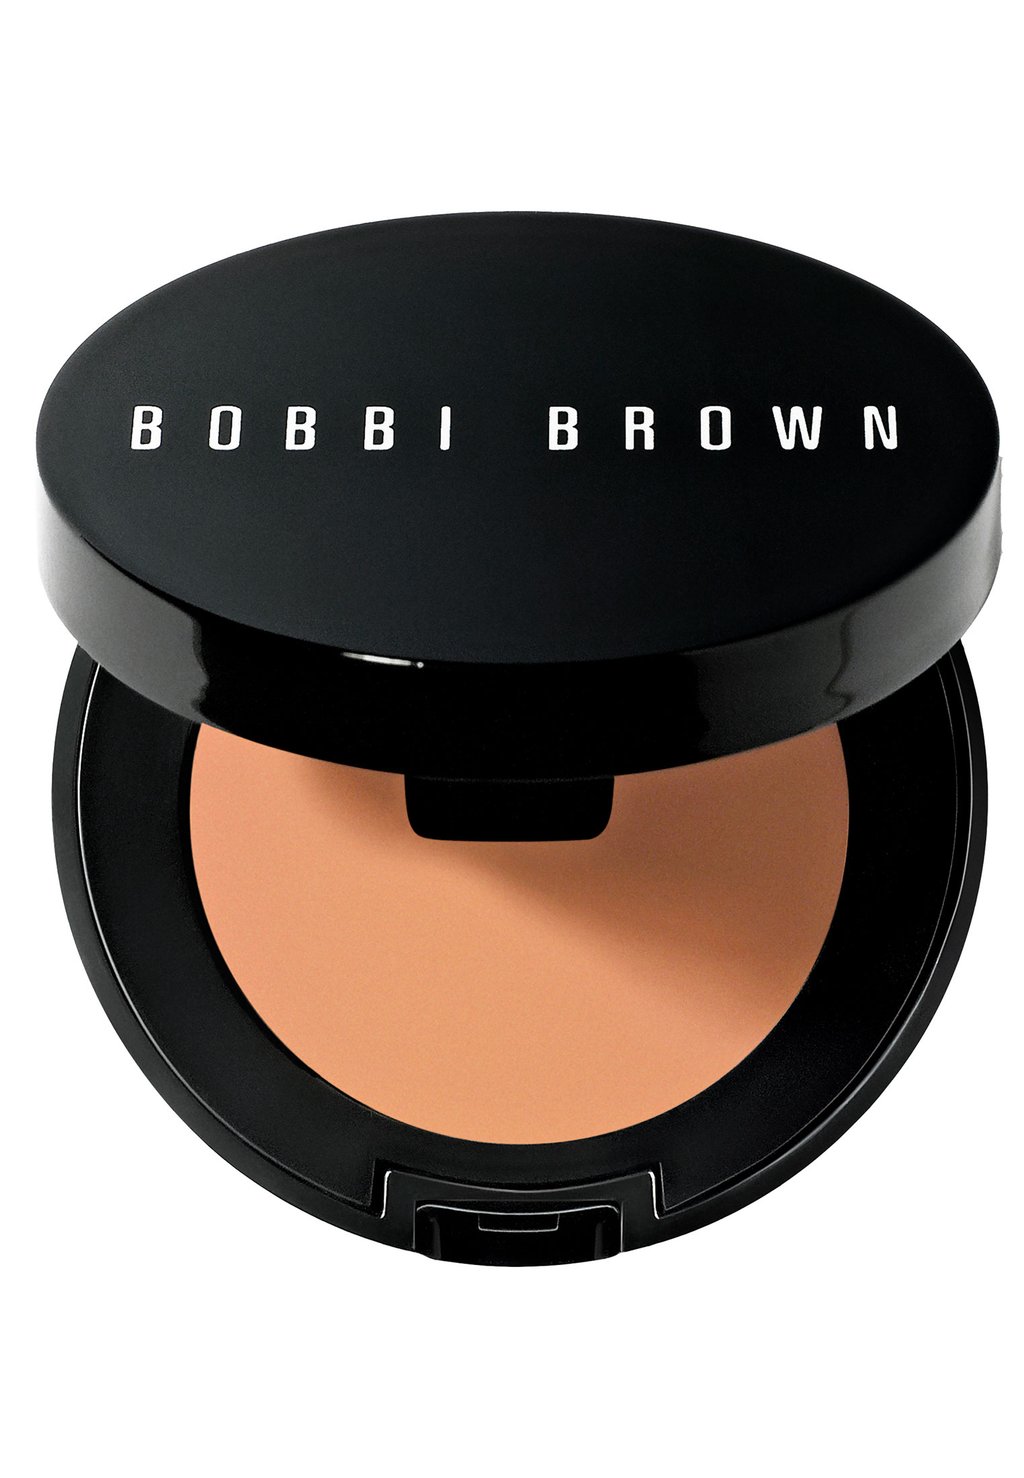 Консилер Corrector Bobbi Brown, цвет light peach консилер skin corrector stick bobbi brown цвет rich peach